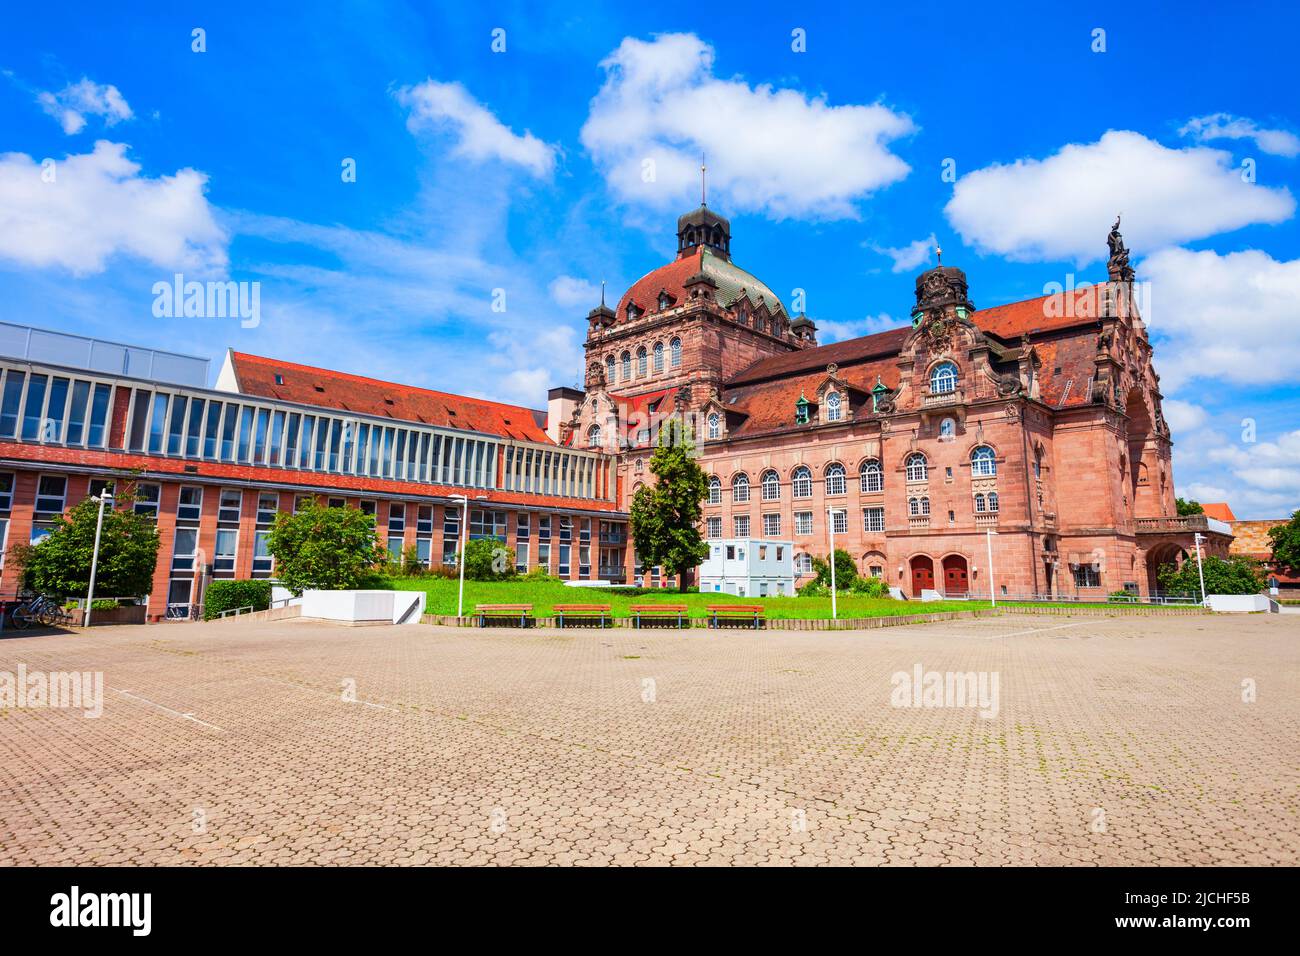 Teatro de Núremberg, Ópera o Staatstheater. Nuremberg es la segunda ciudad más grande del estado de Baviera en Alemania. Foto de stock